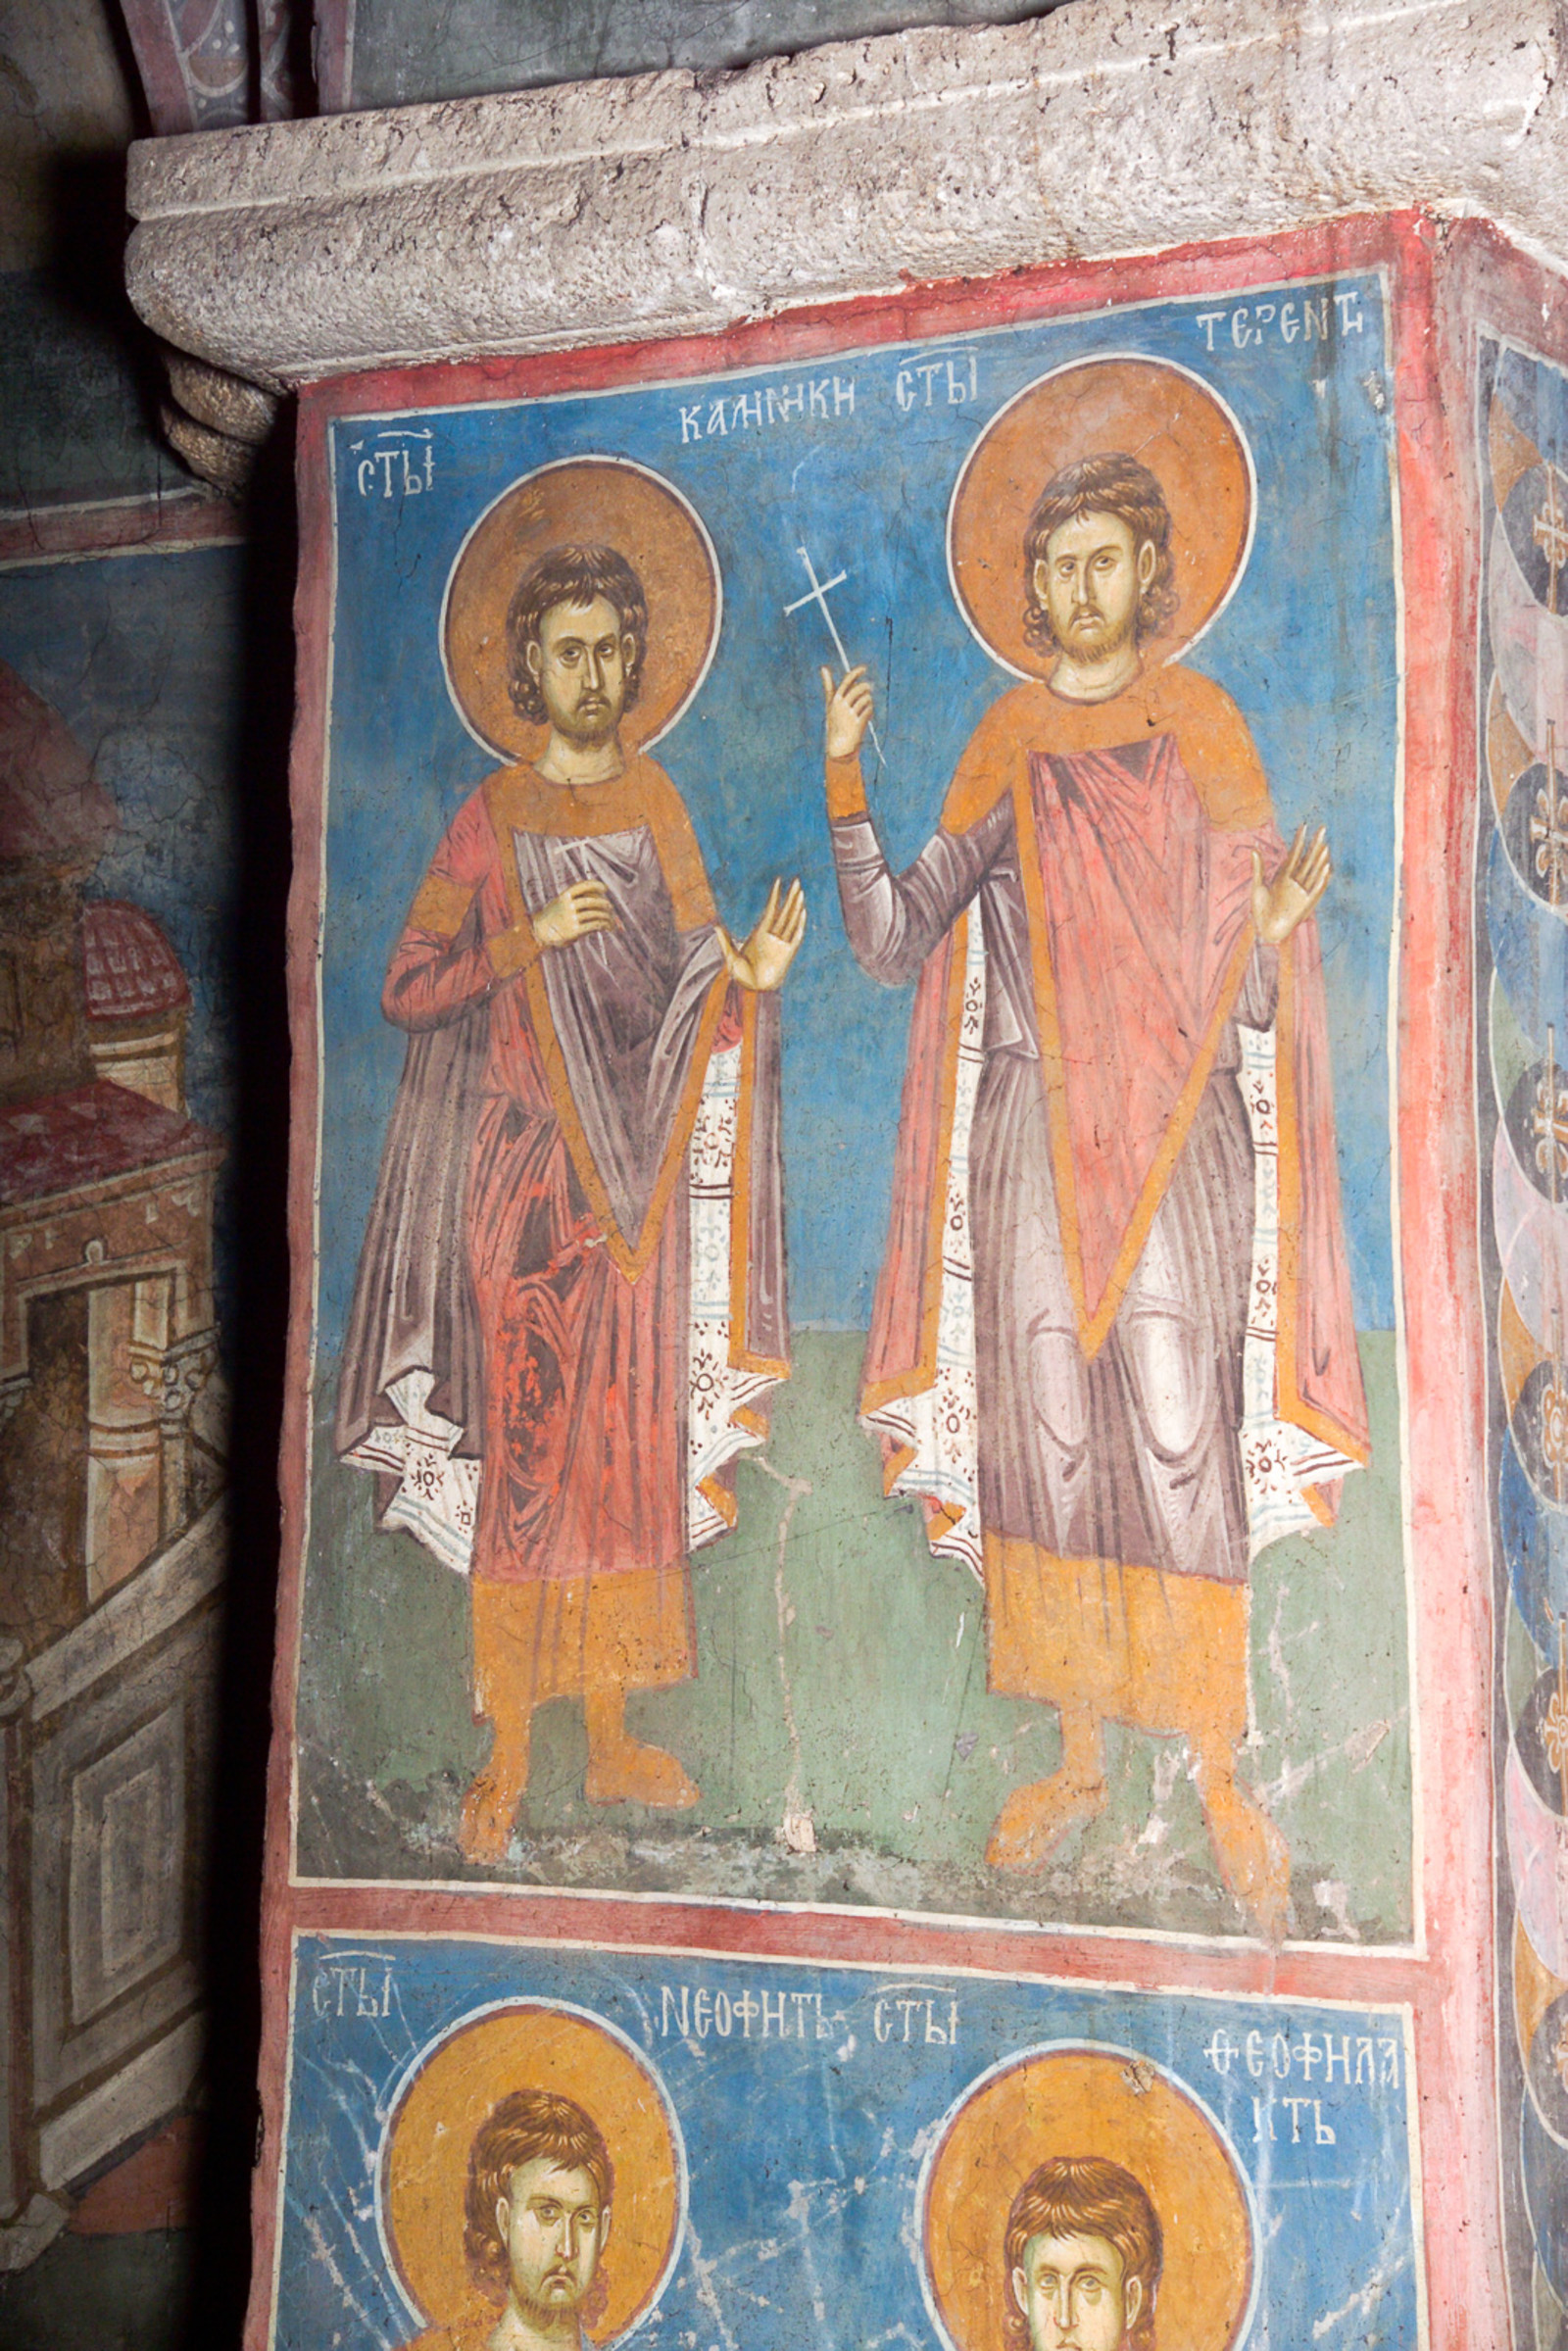 127,128 St. Callinicus and St. Terentius